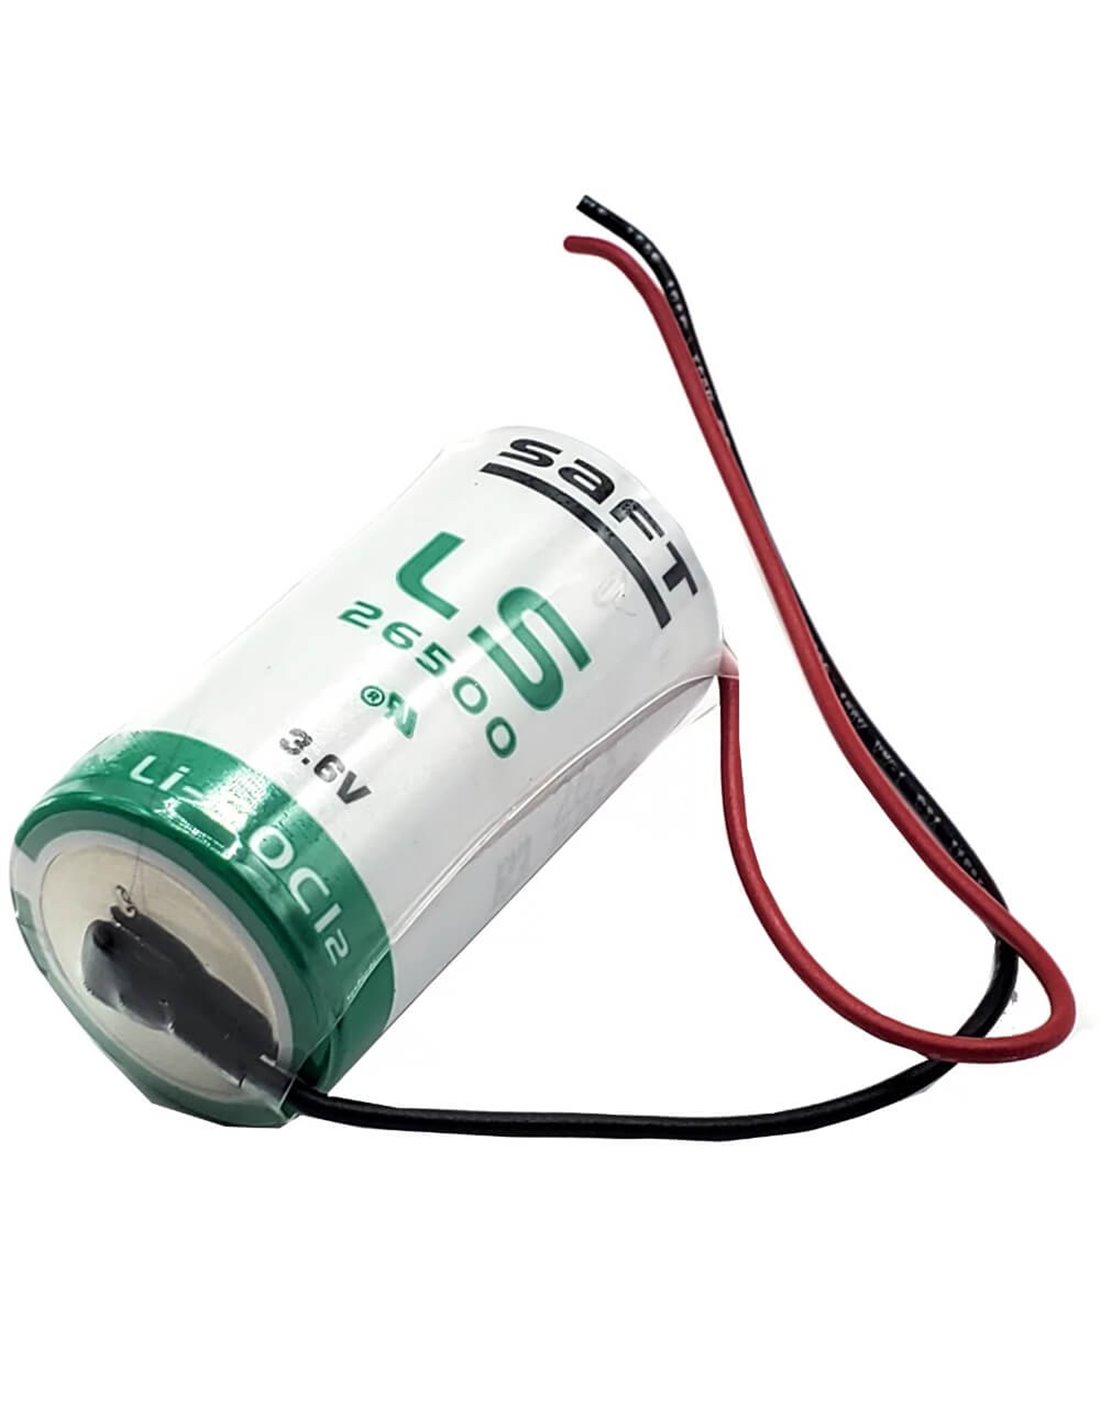 Saft lS 14250 batterie lithium - 3,6 v - 3,6 v lithium : :  High-Tech